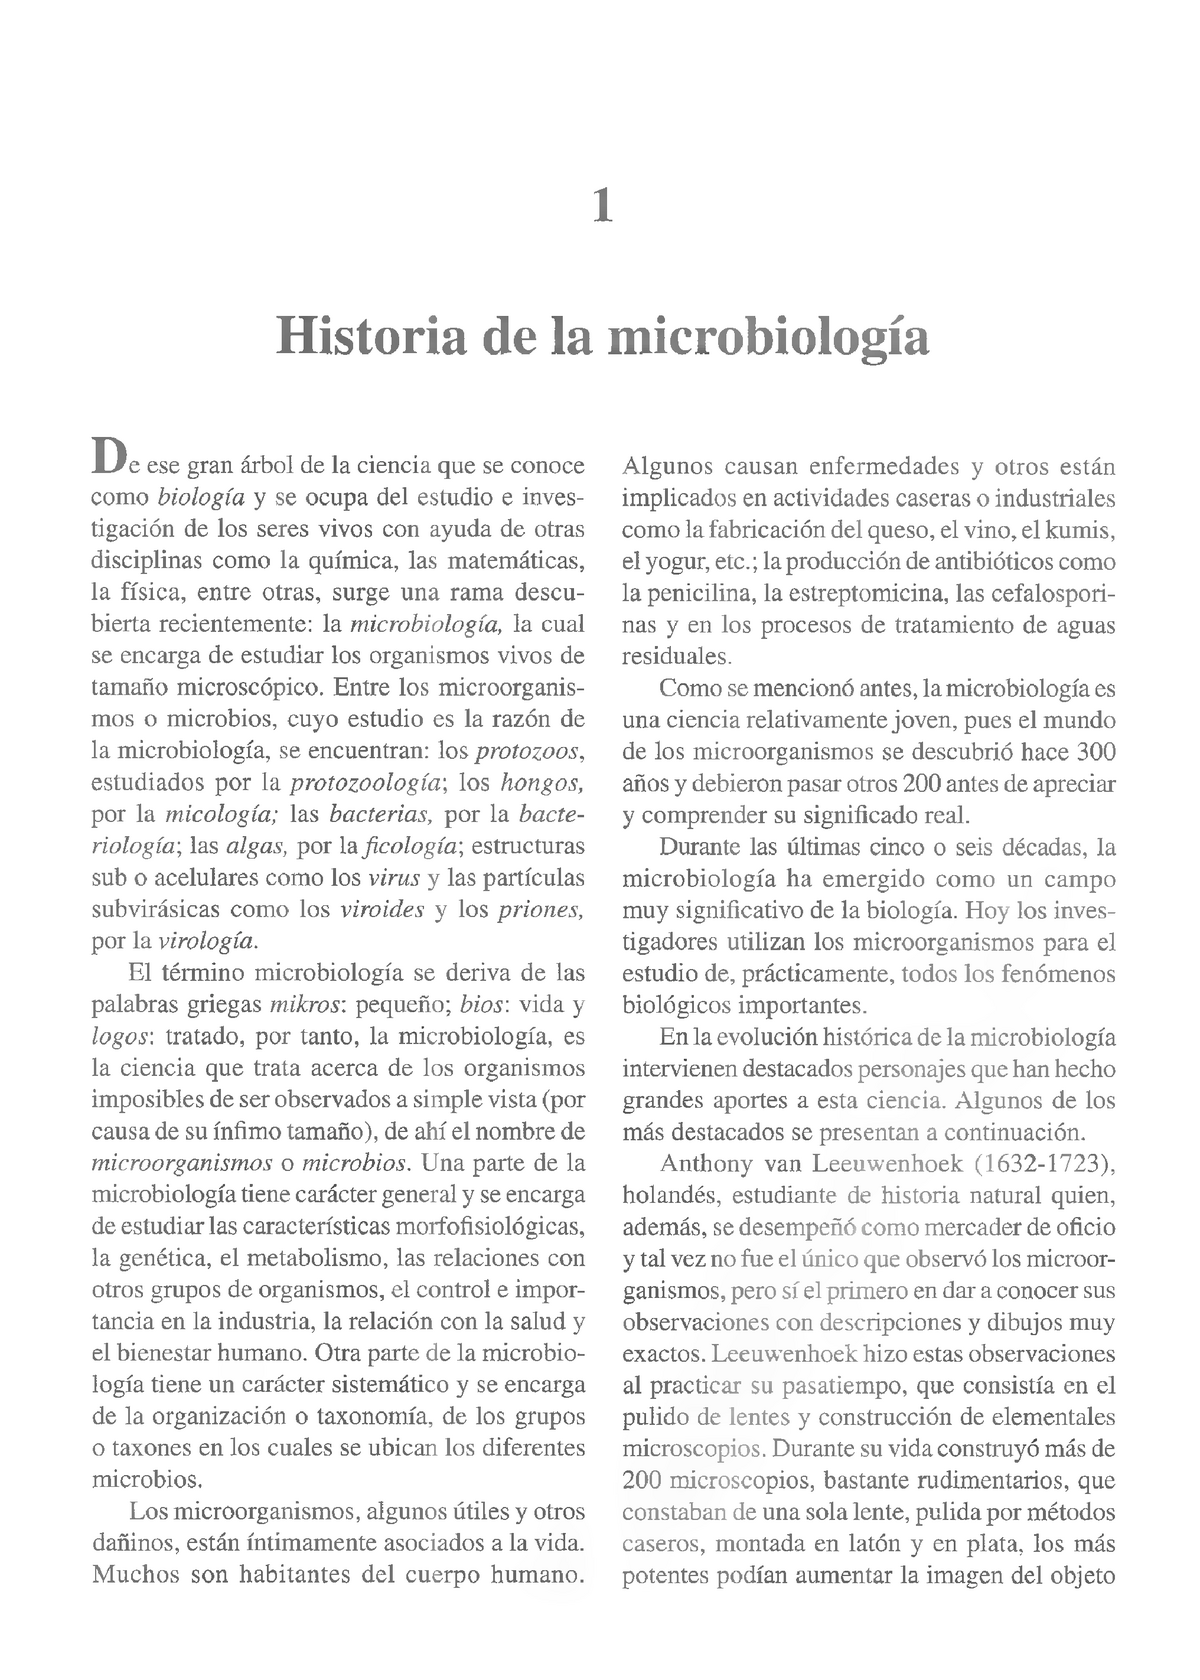 Historia De La Microbiologia 1 Studocu